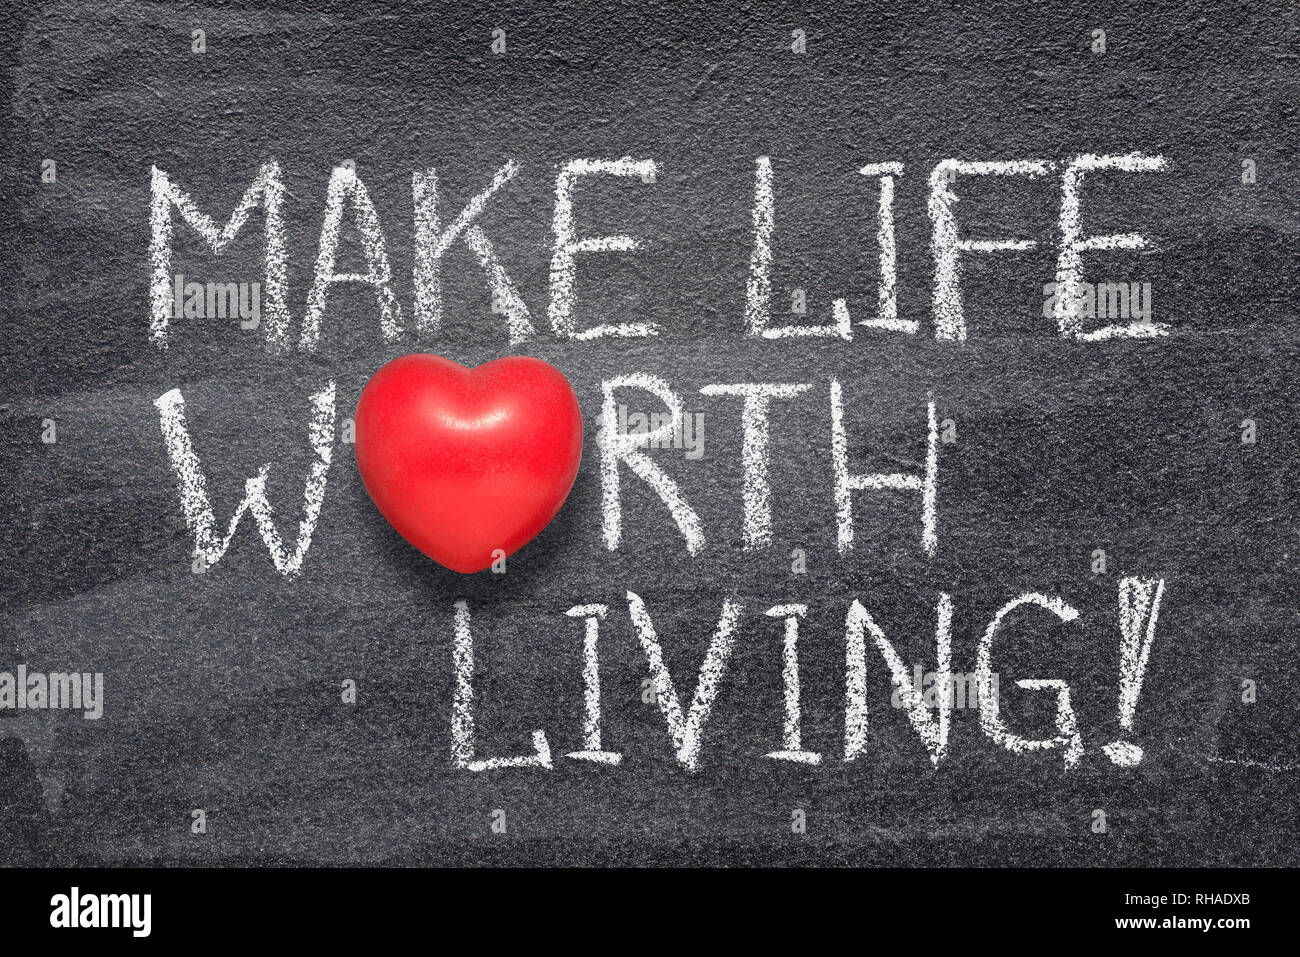 Das Leben lebenswert machen Phrase handgeschrieben auf Schiefertafel mit roten Herzen Symbol anstelle von O Stockfoto